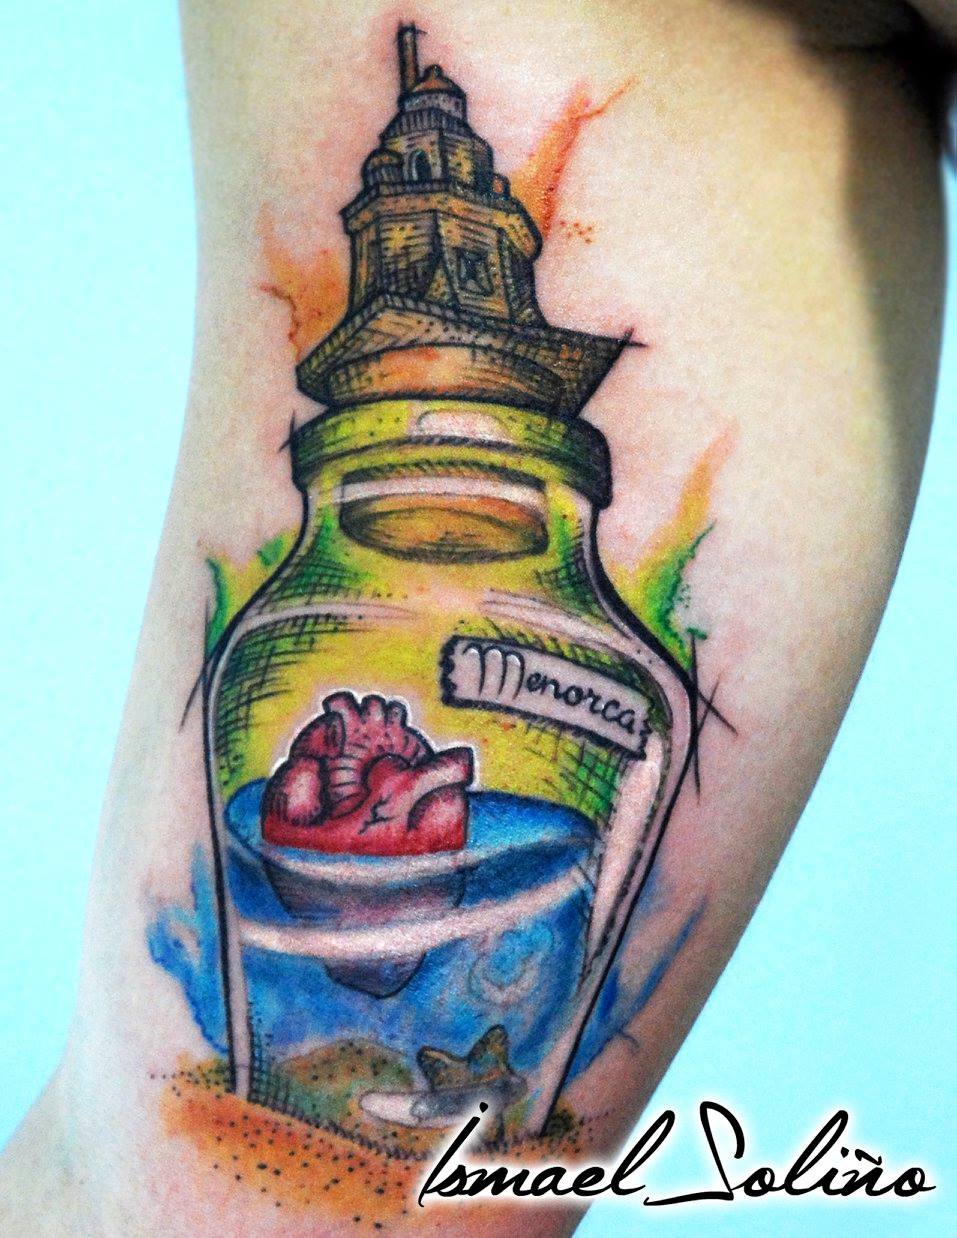 Tatuaje de una botella con un corazón flotando dentro